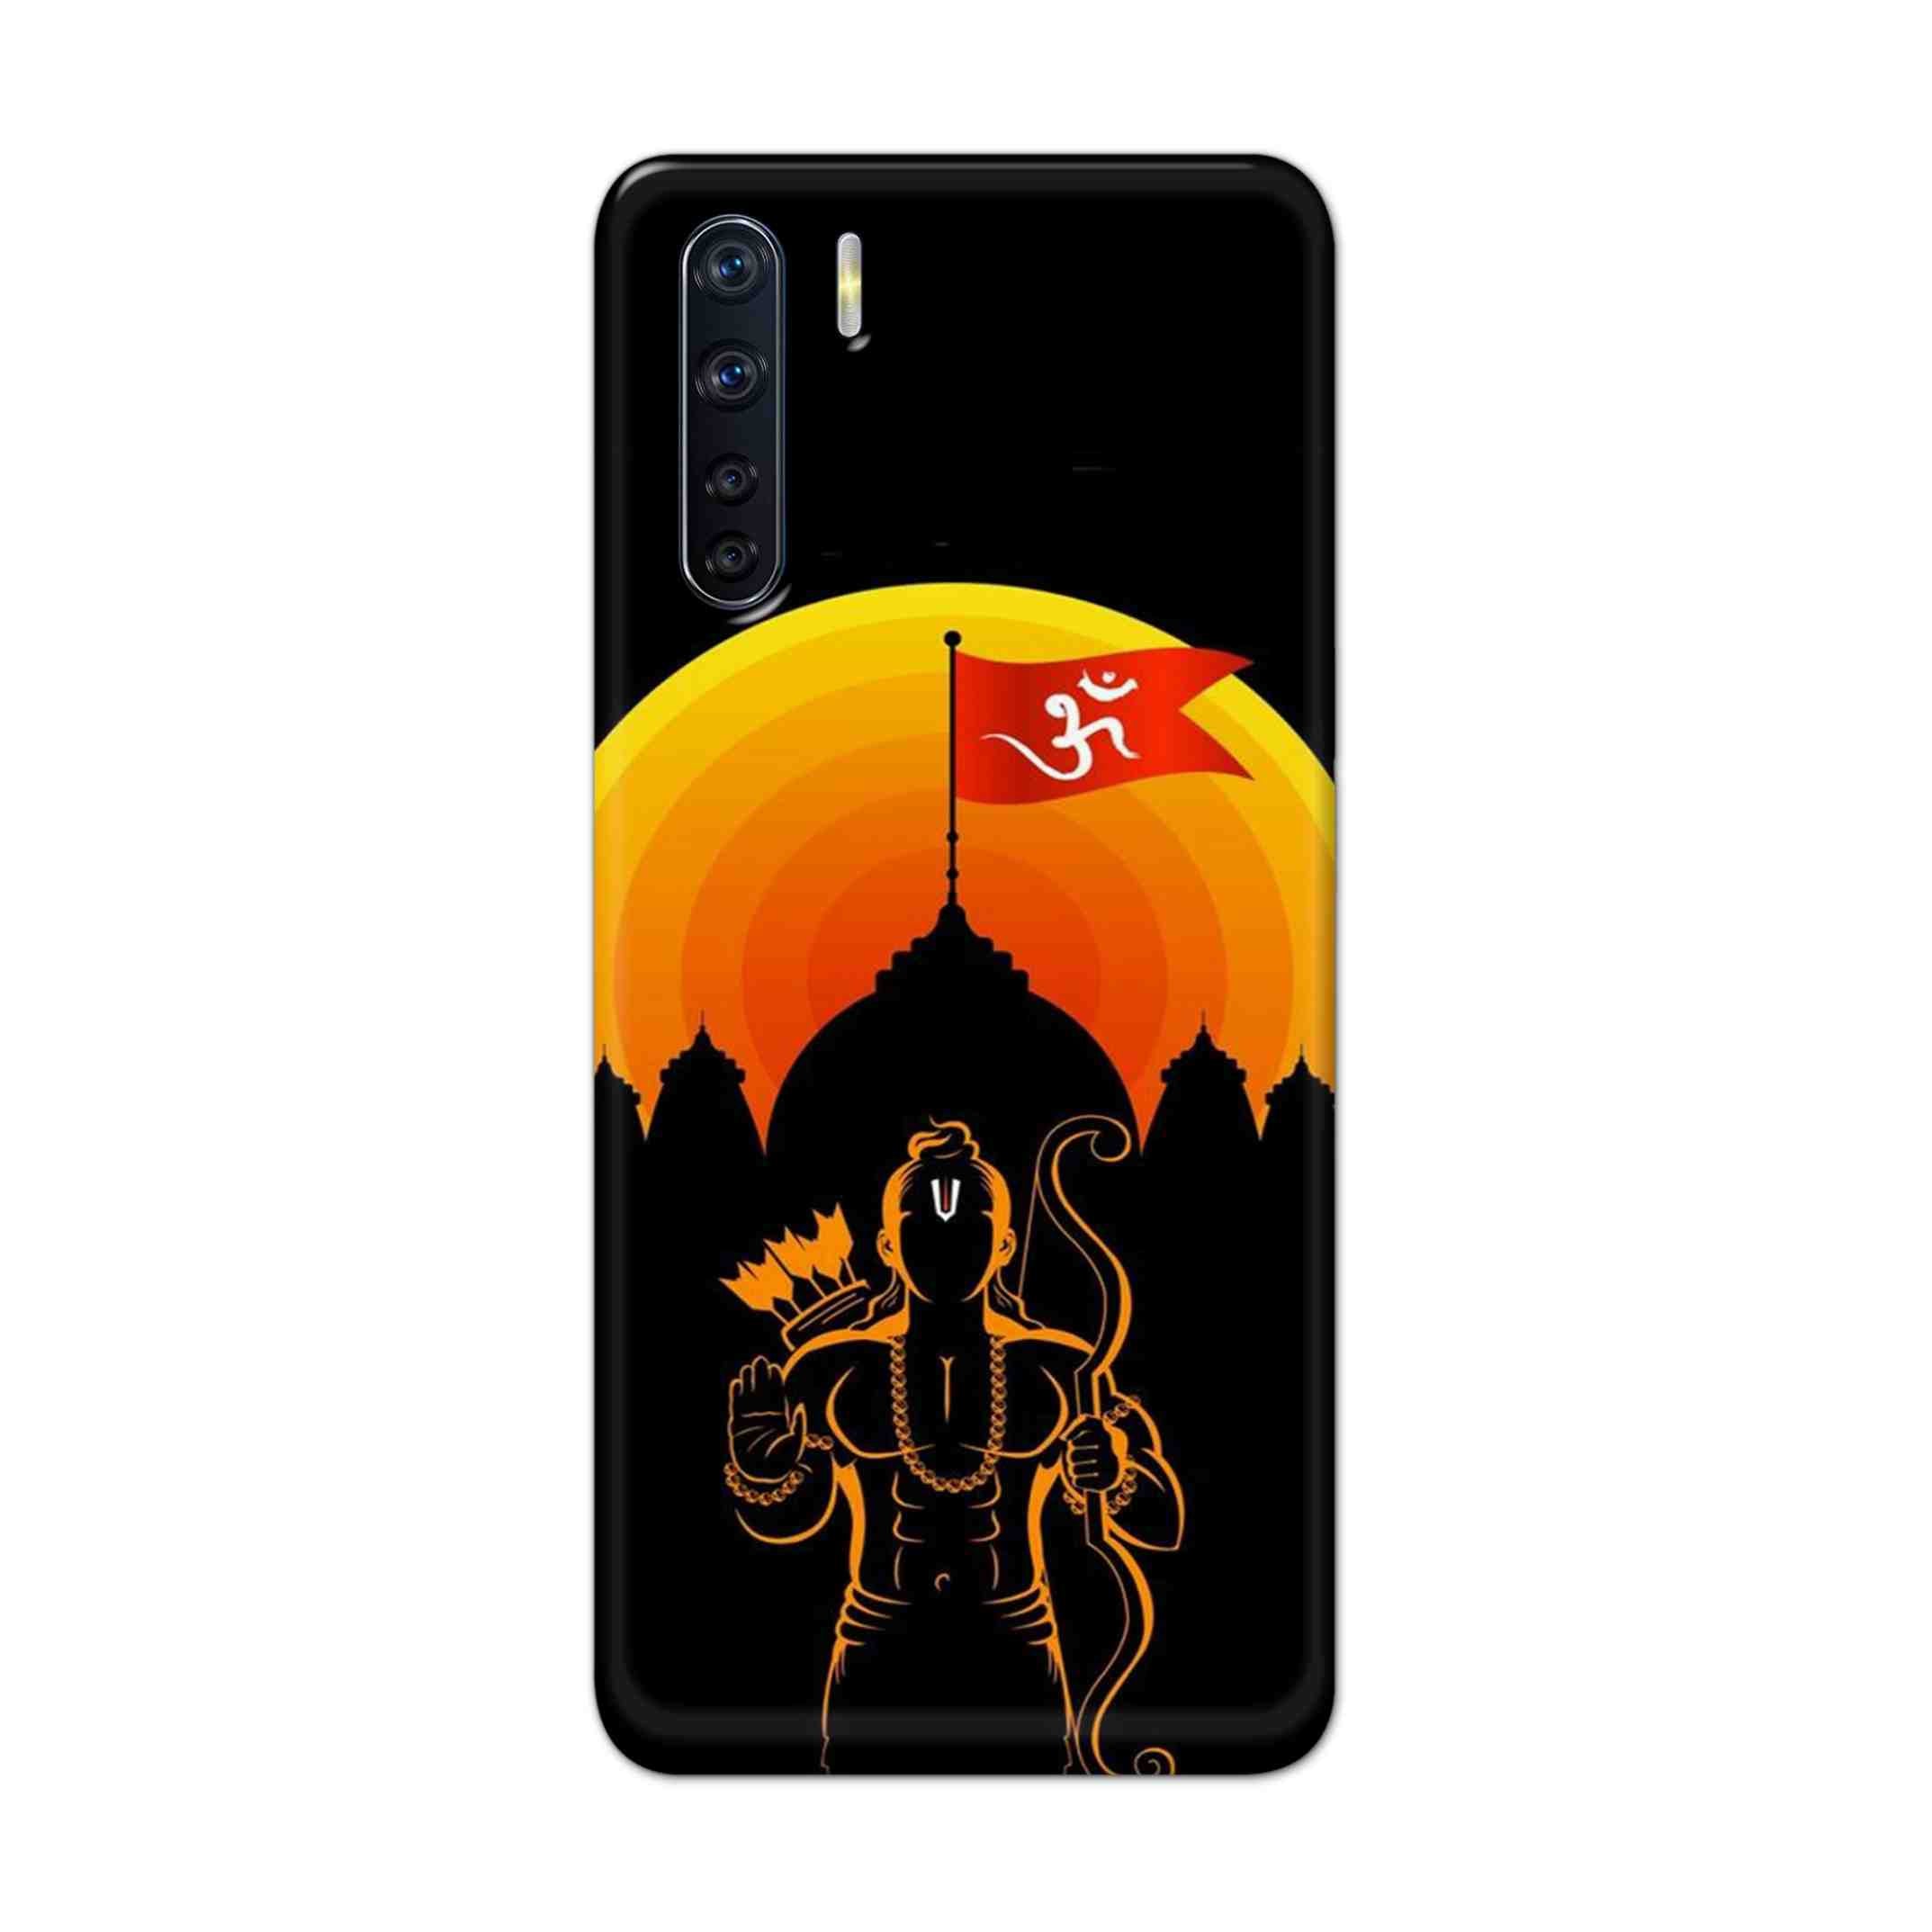 Buy Ram Ji Hard Back Mobile Phone Case Cover For OPPO F15 Online